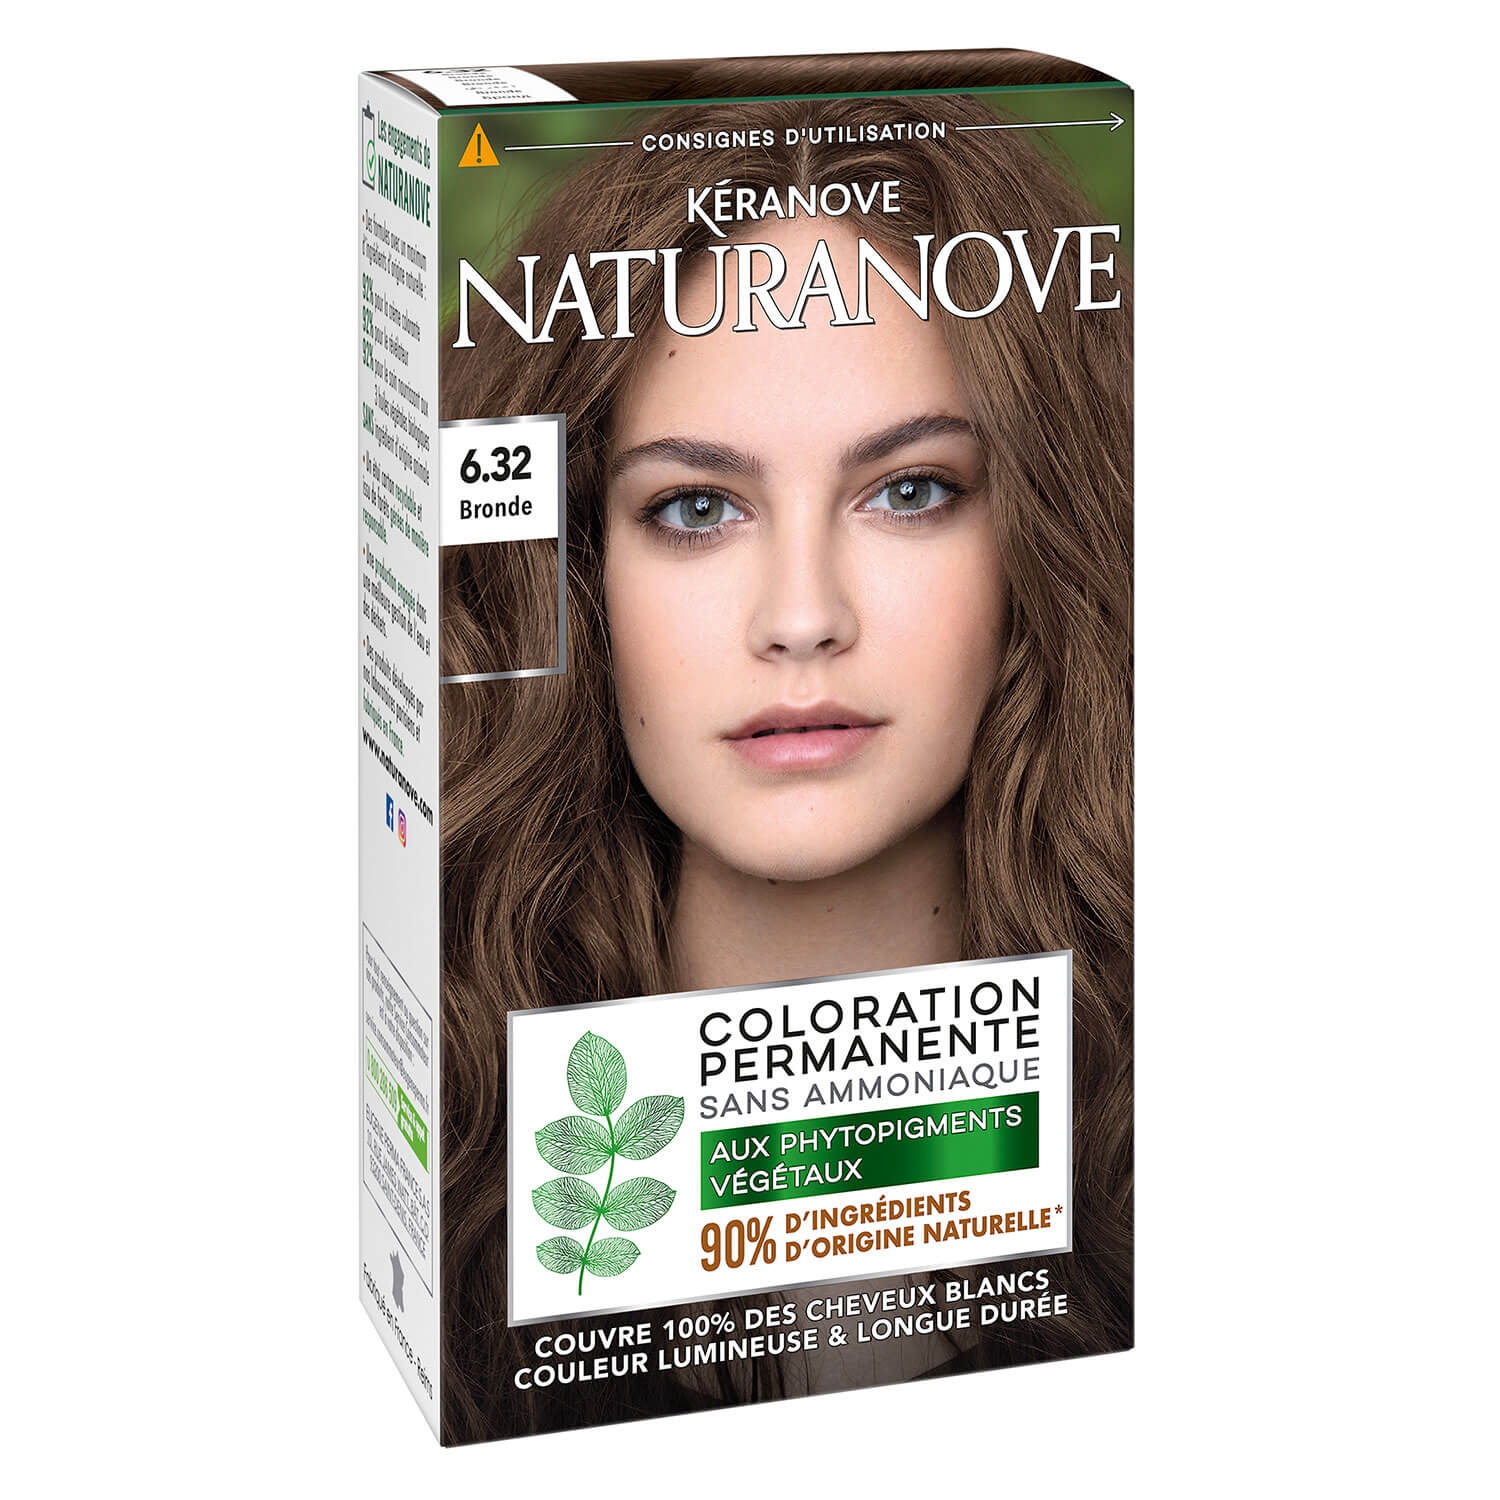 Produktbild von Naturanove - Dauerhafte Haarfarbe Bronde 6.32